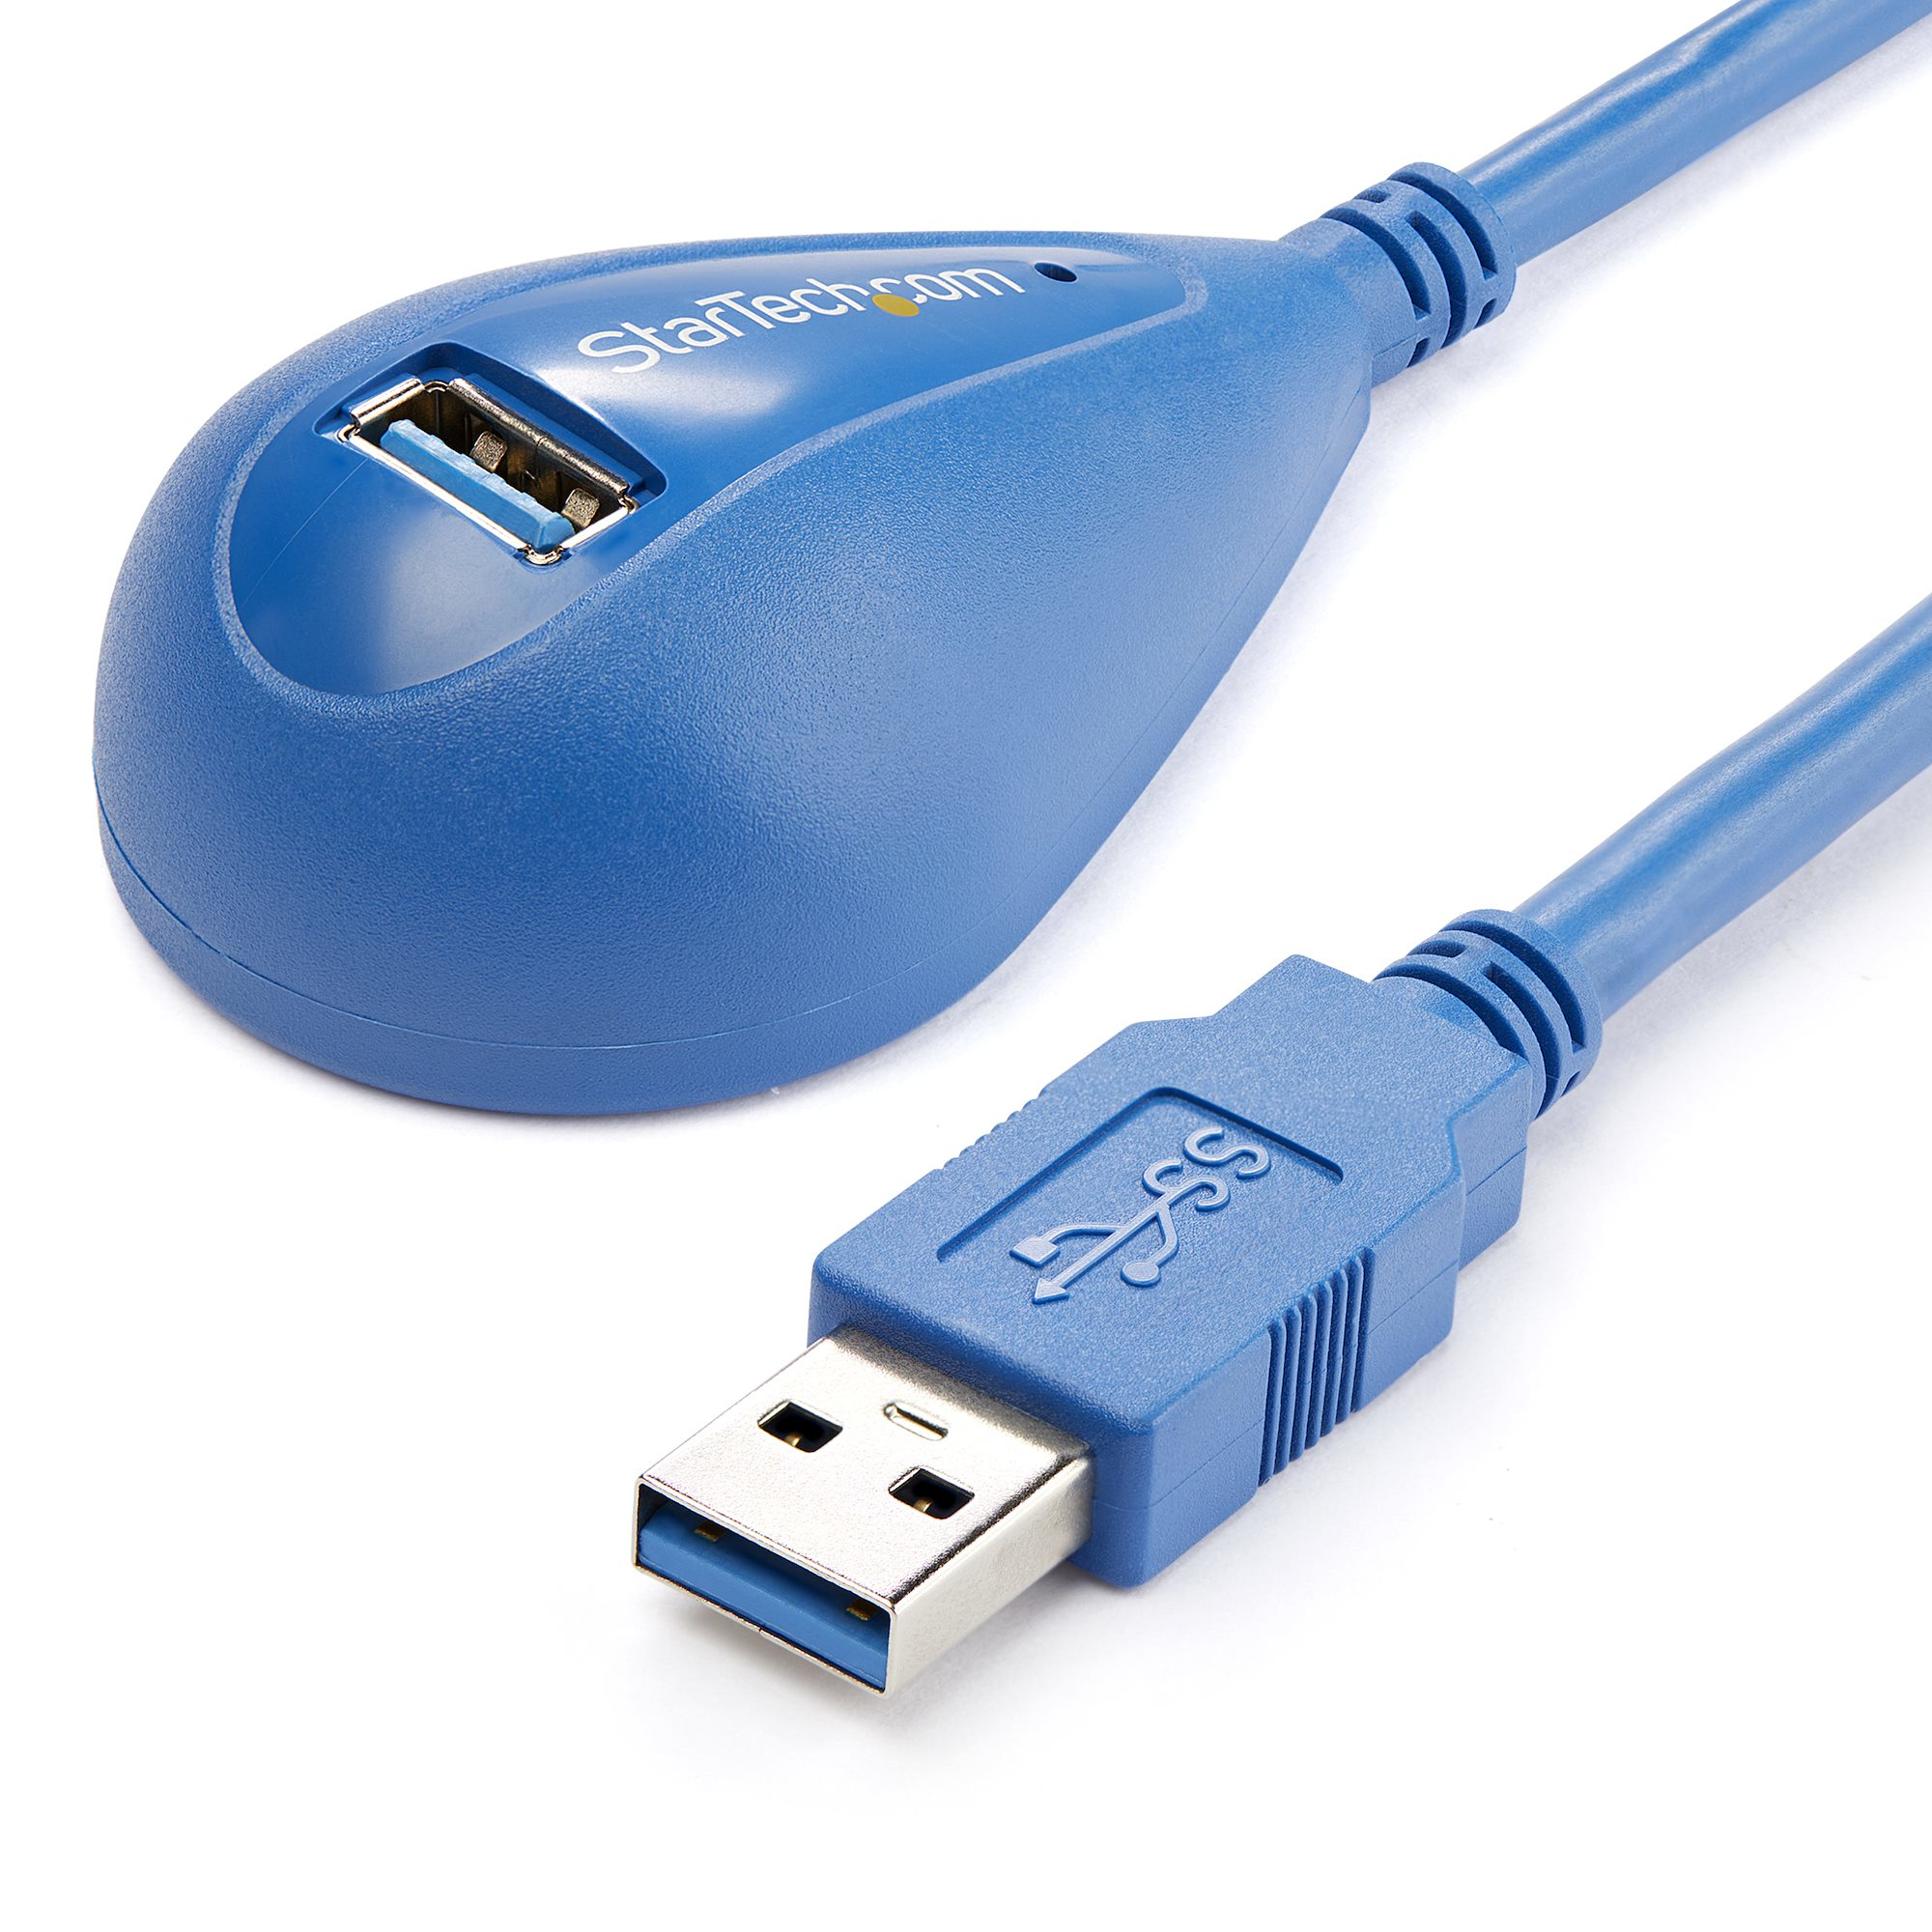 Oplossen Vechter Kapper StarTech.com 1,50m SuperSpeed USB 3.0 Verlengkabel A naar A M/F  (USB3SEXT5DSK) kopen » Centralpoint